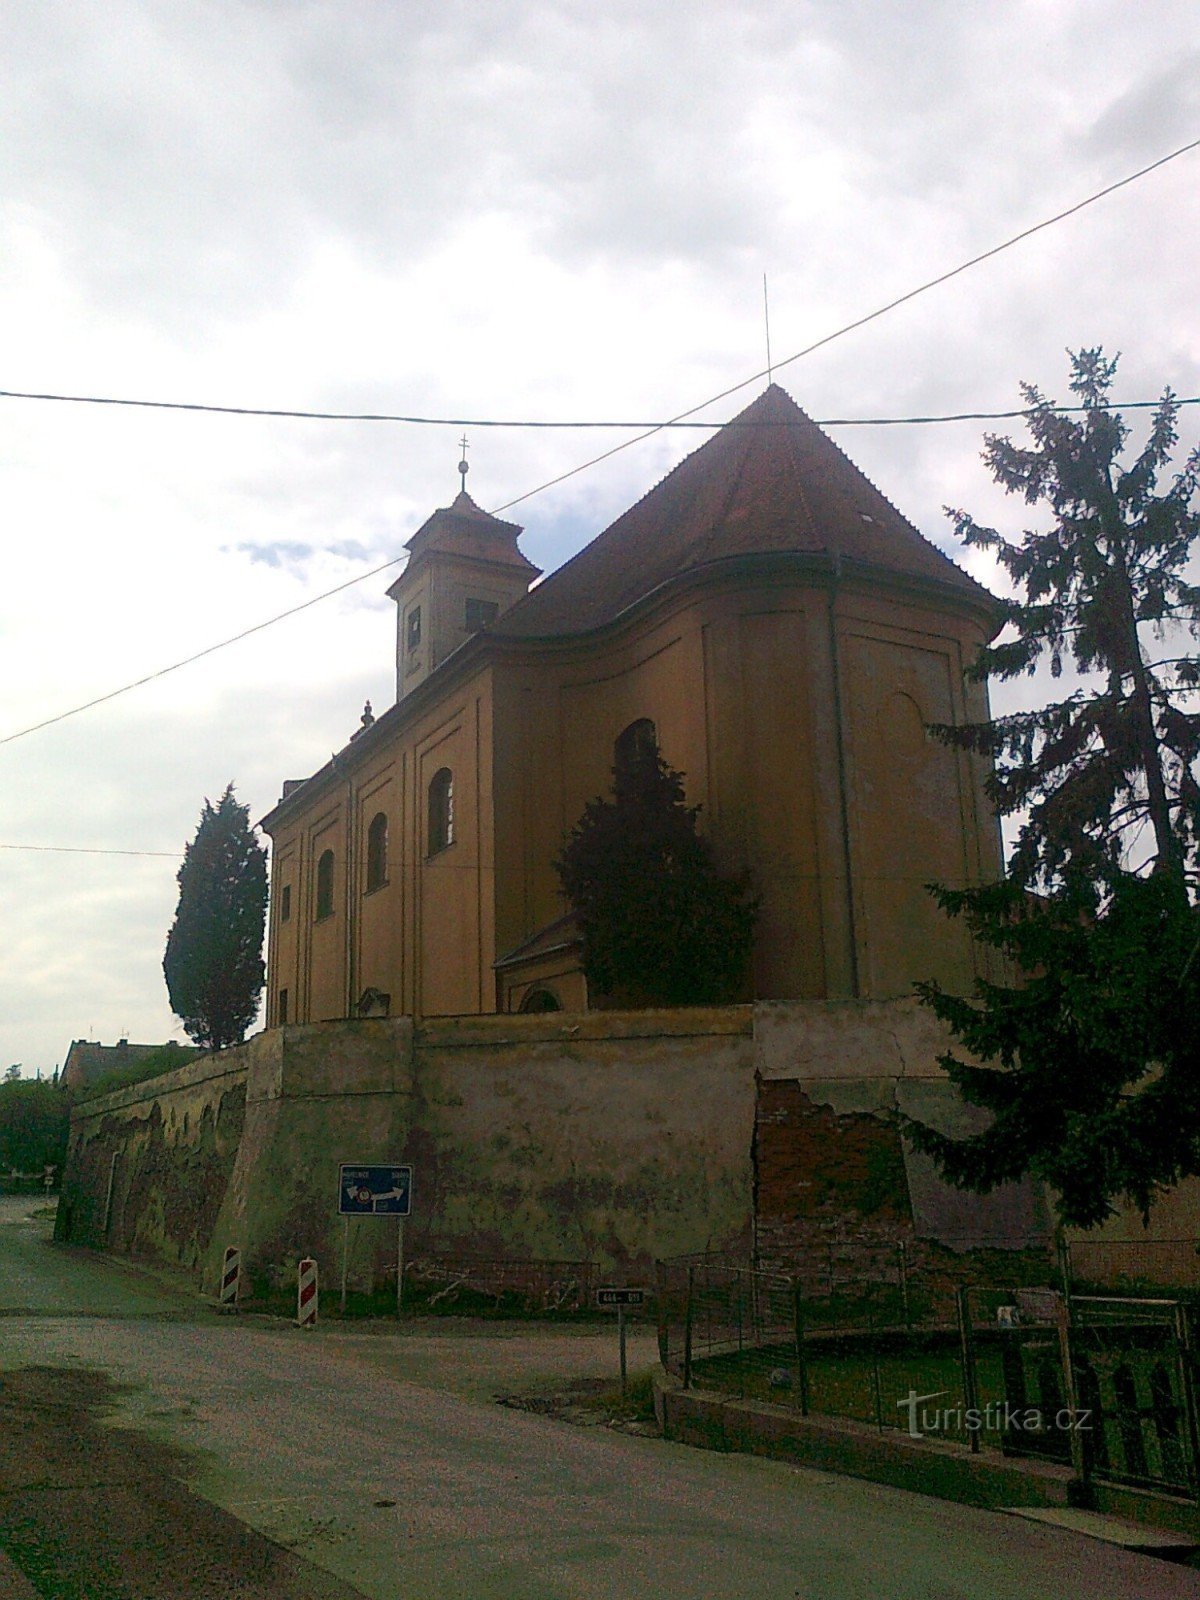 baksidan av kyrkan från sidan av Zámecká-gatan